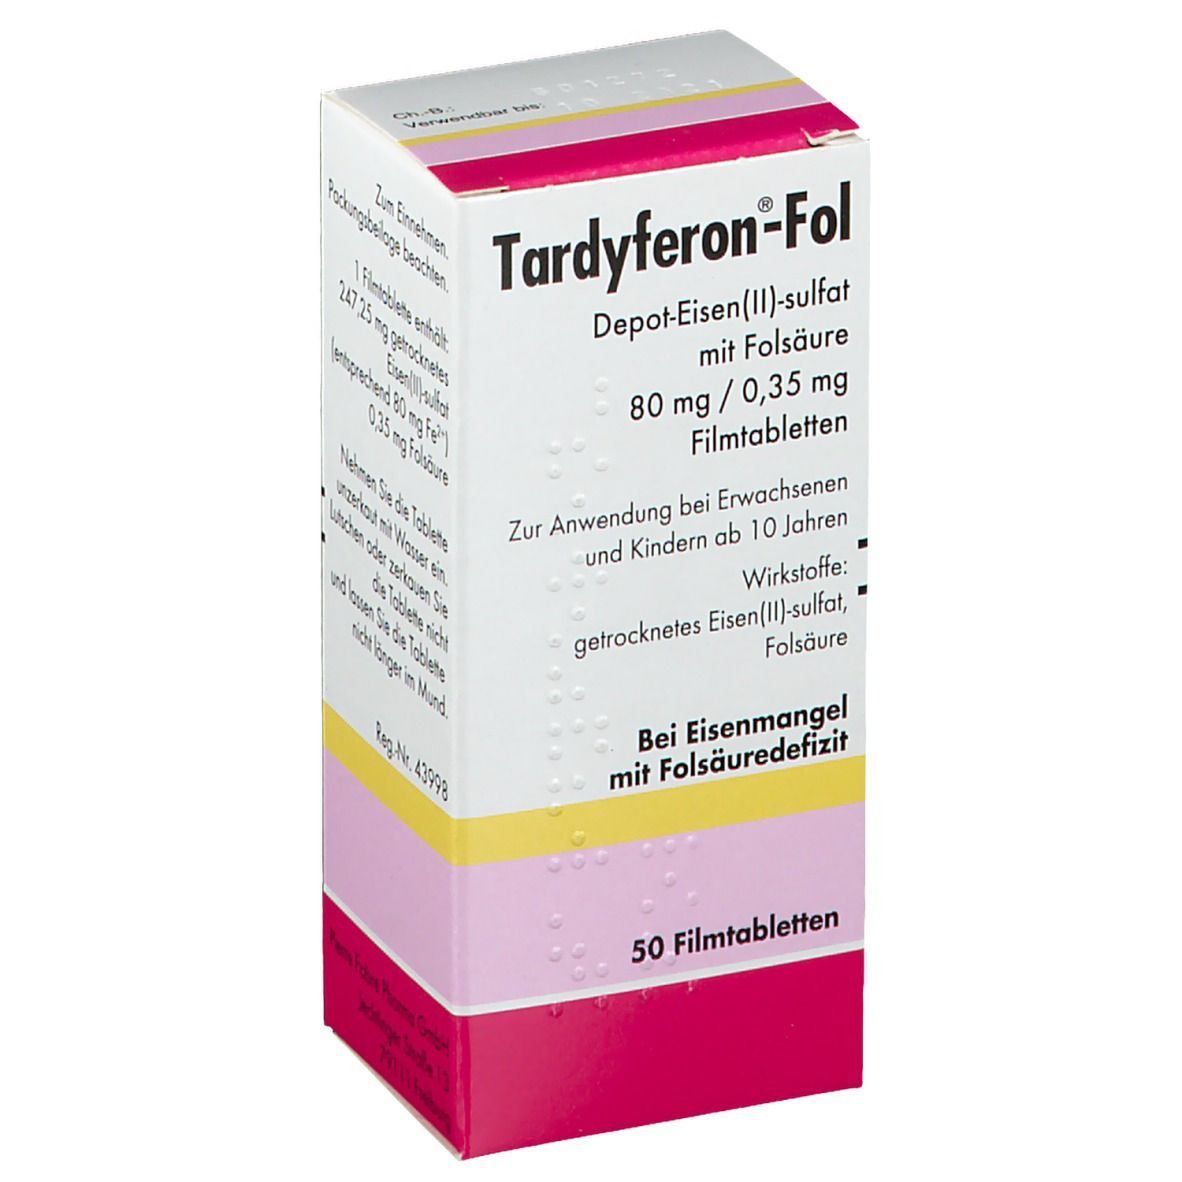 Tardyferon-Fol Depot-Eisen(II)-sulfat